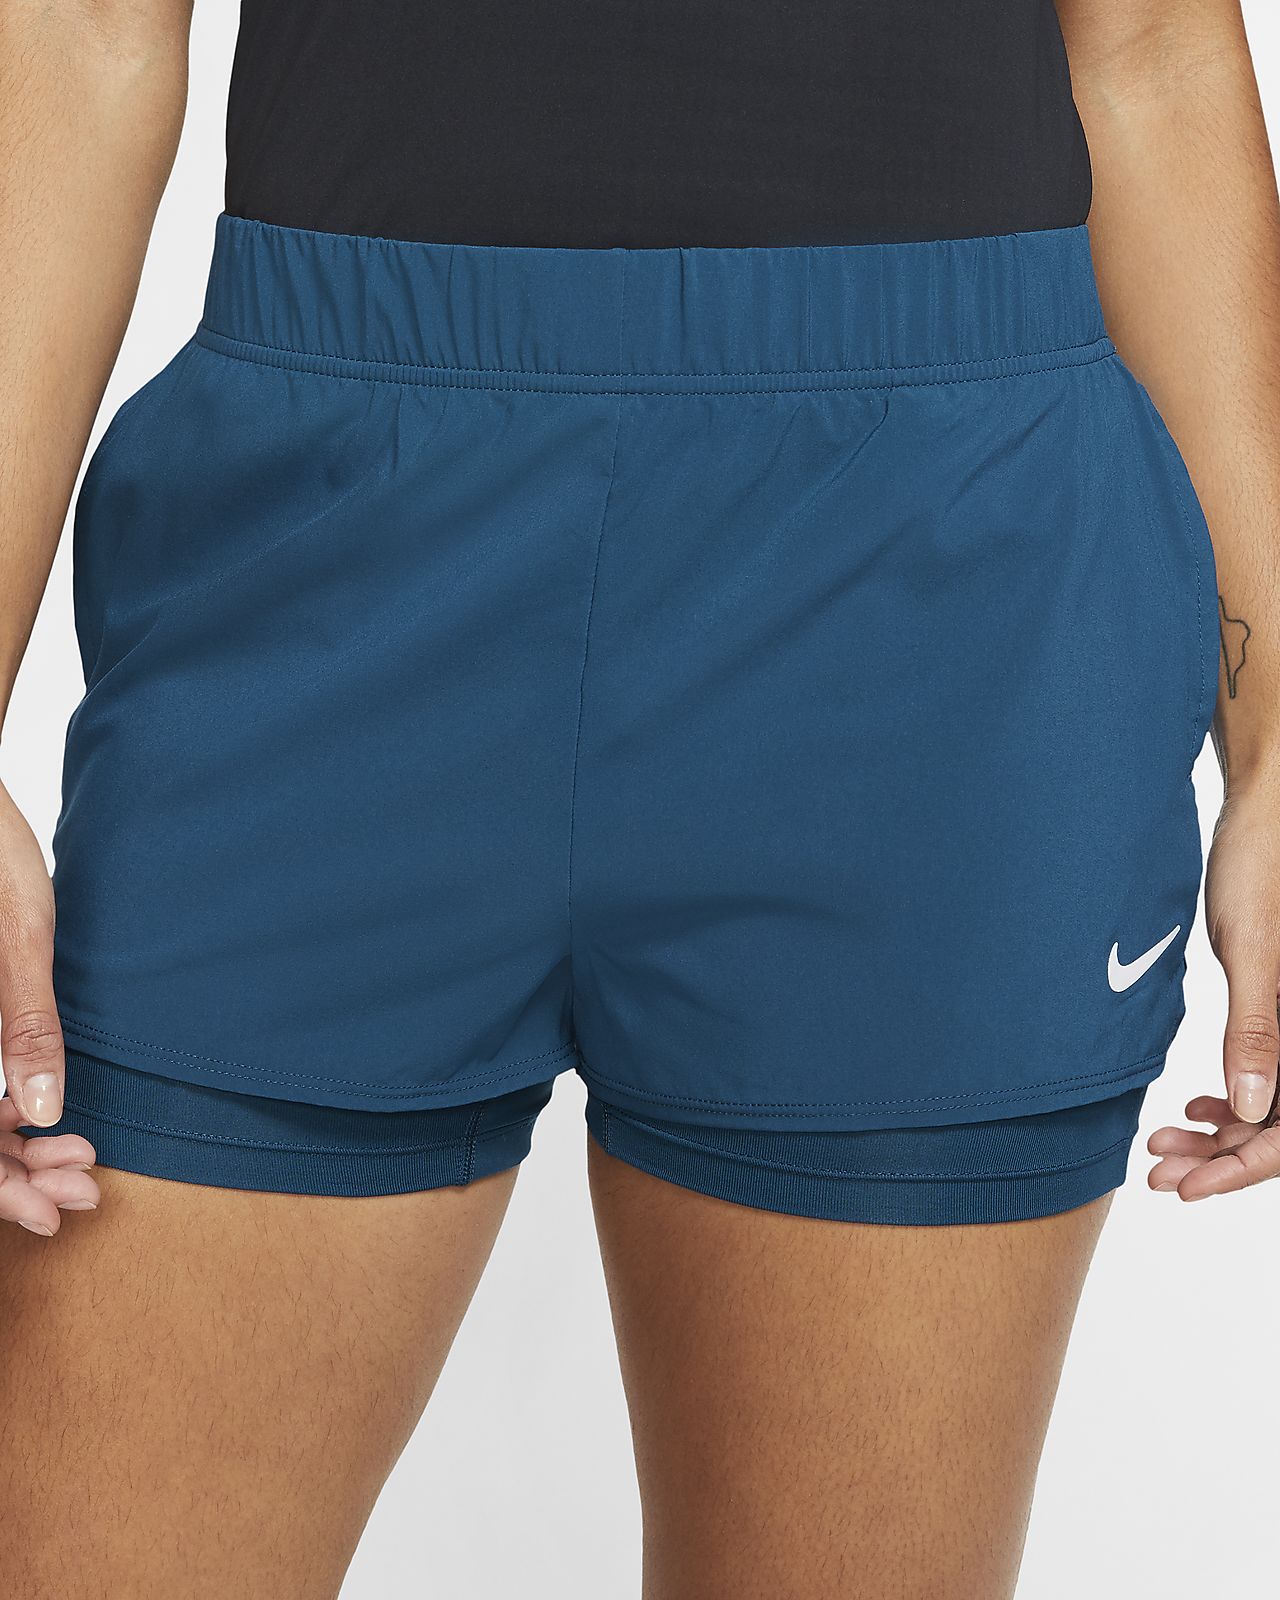 tennis undershorts